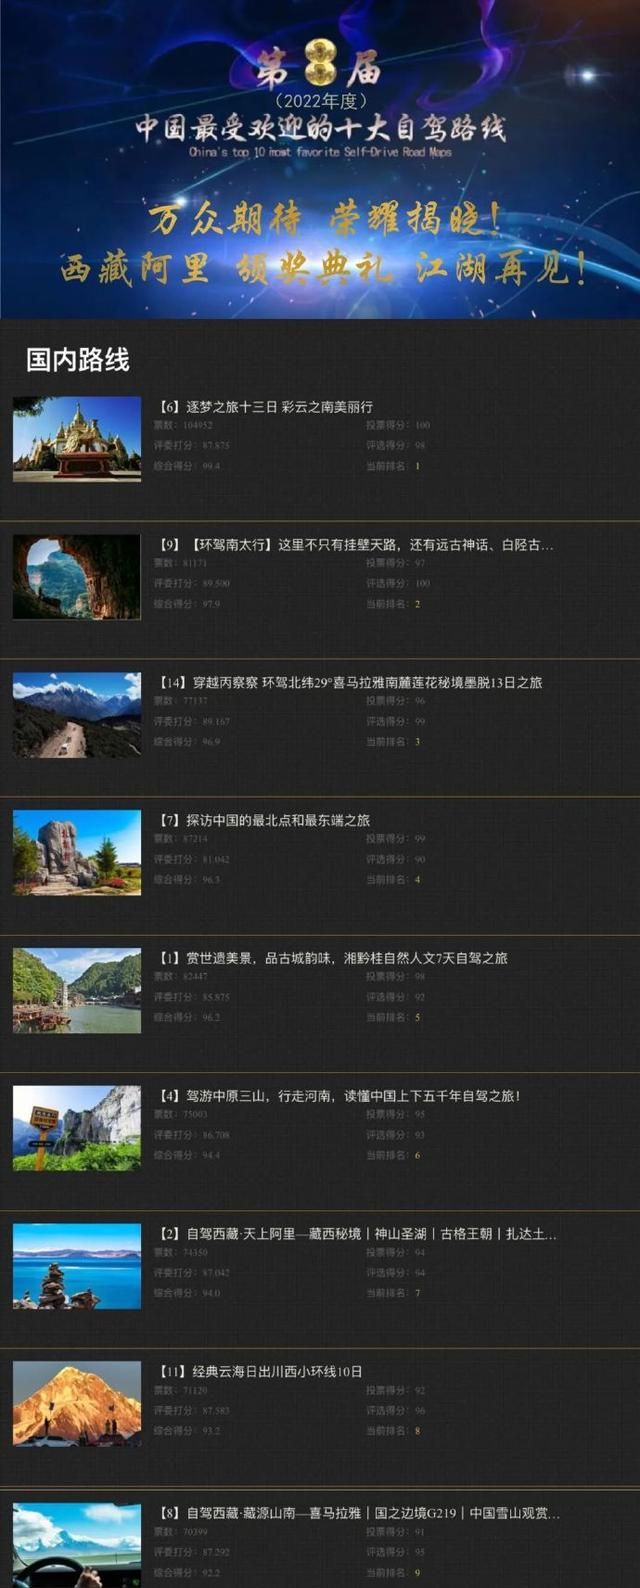 中国最受欢迎十大自驾路线TOP1：逐梦之旅十三日 彩云之南美丽行